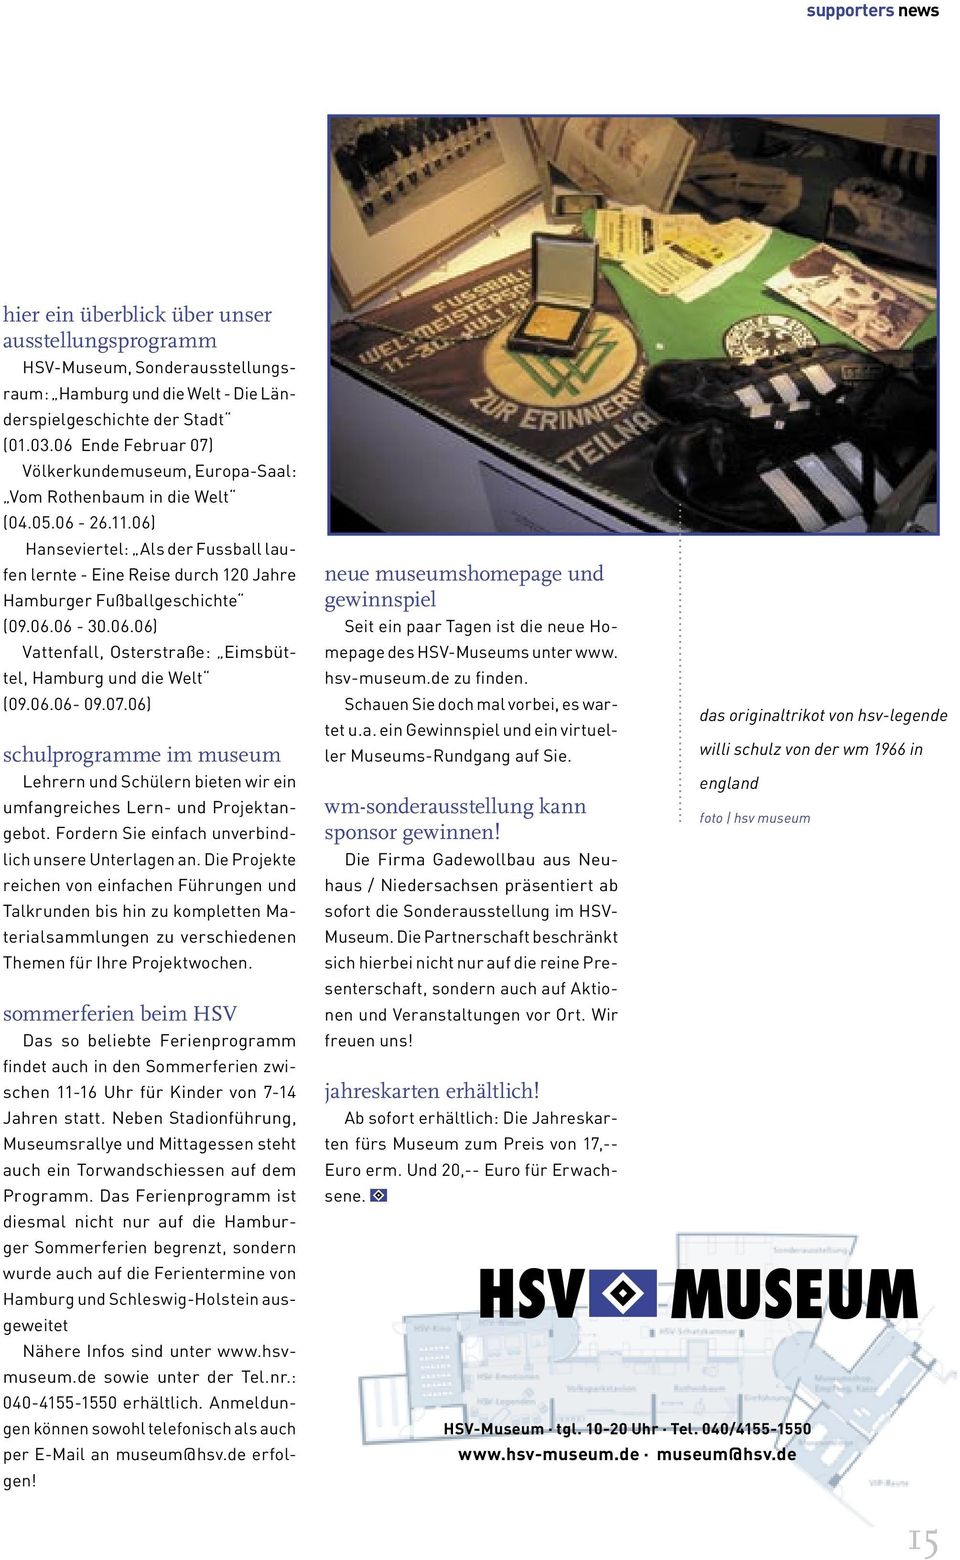 06) Hanseviertel: Als der Fussball laufen lernte - Eine Reise durch 120 Jahre Hamburger Fußballgeschichte (09.06.06-30.06.06) Vattenfall, Osterstraße: Eimsbüttel, Hamburg und die Welt (09.06.06-09.07.